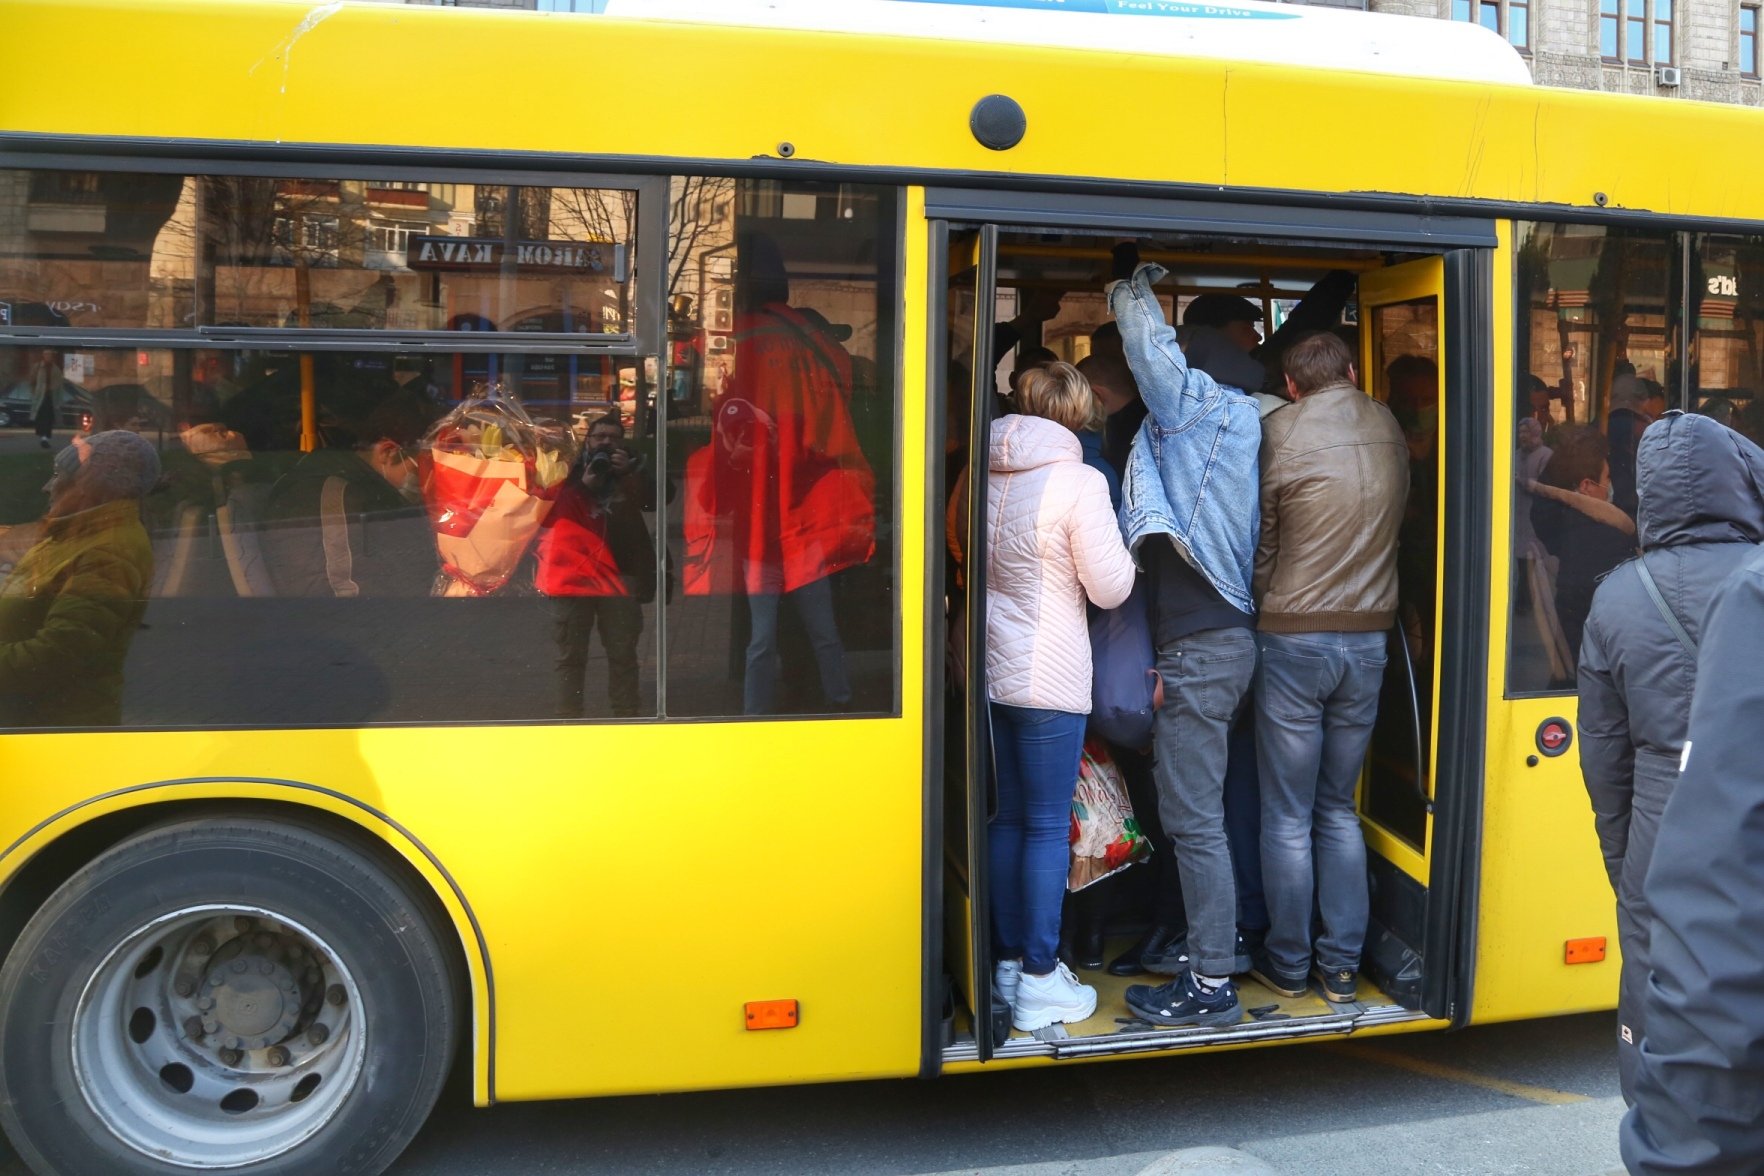 Переполненный общественный транспорт. Автобус битком. Люди в переполненном автобусе. Набитый автобус. Каждое утро автобус